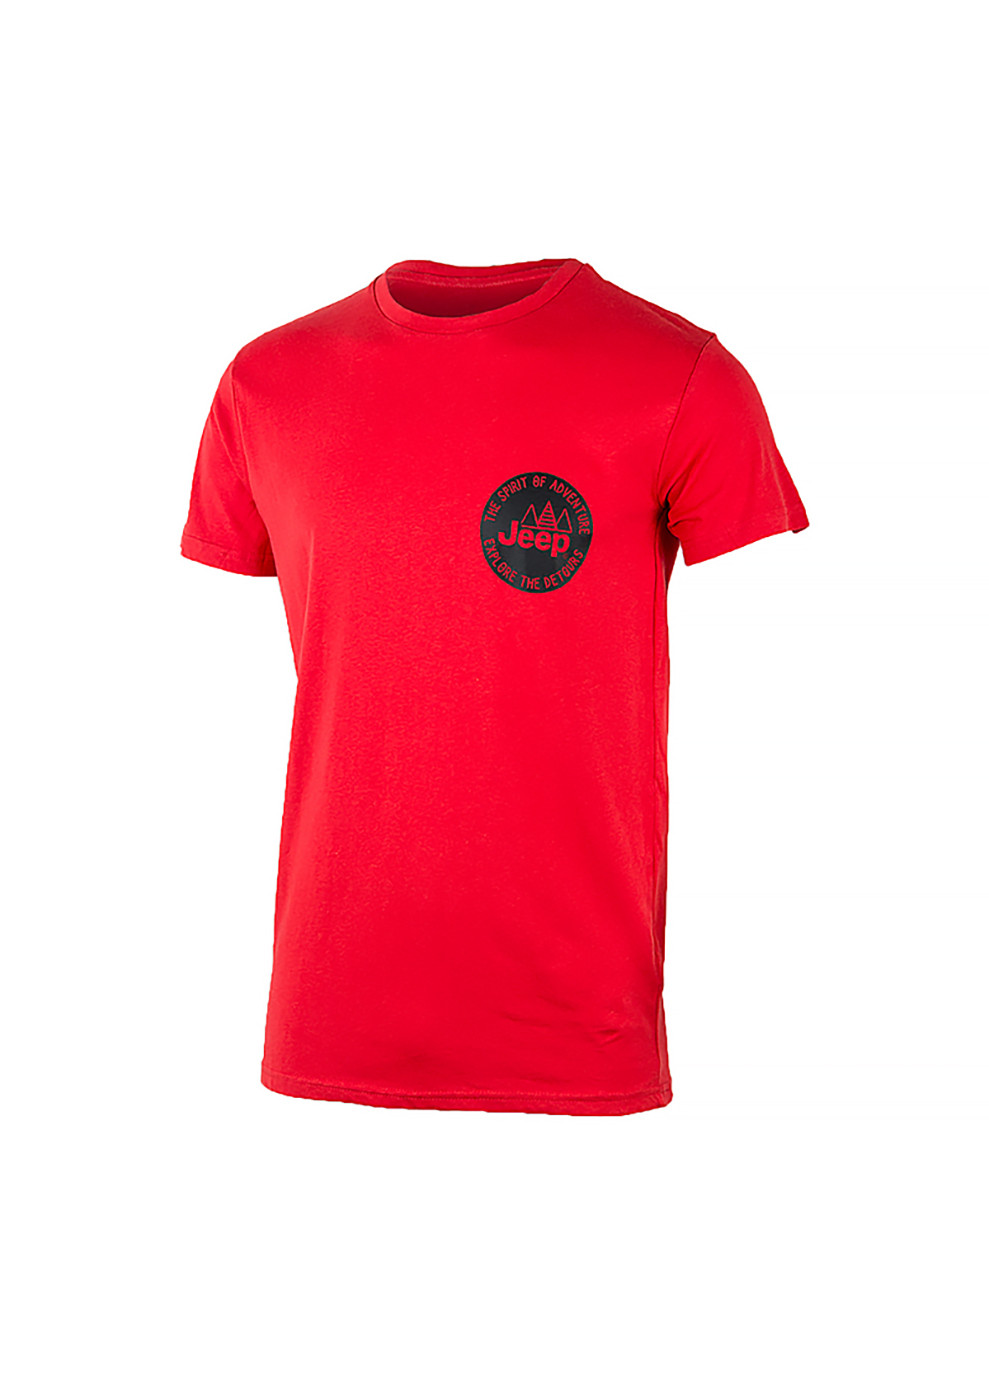 Красная мужская футболка t-shirt the spirit of adventure красный m (o102586-r699 m) Jeep